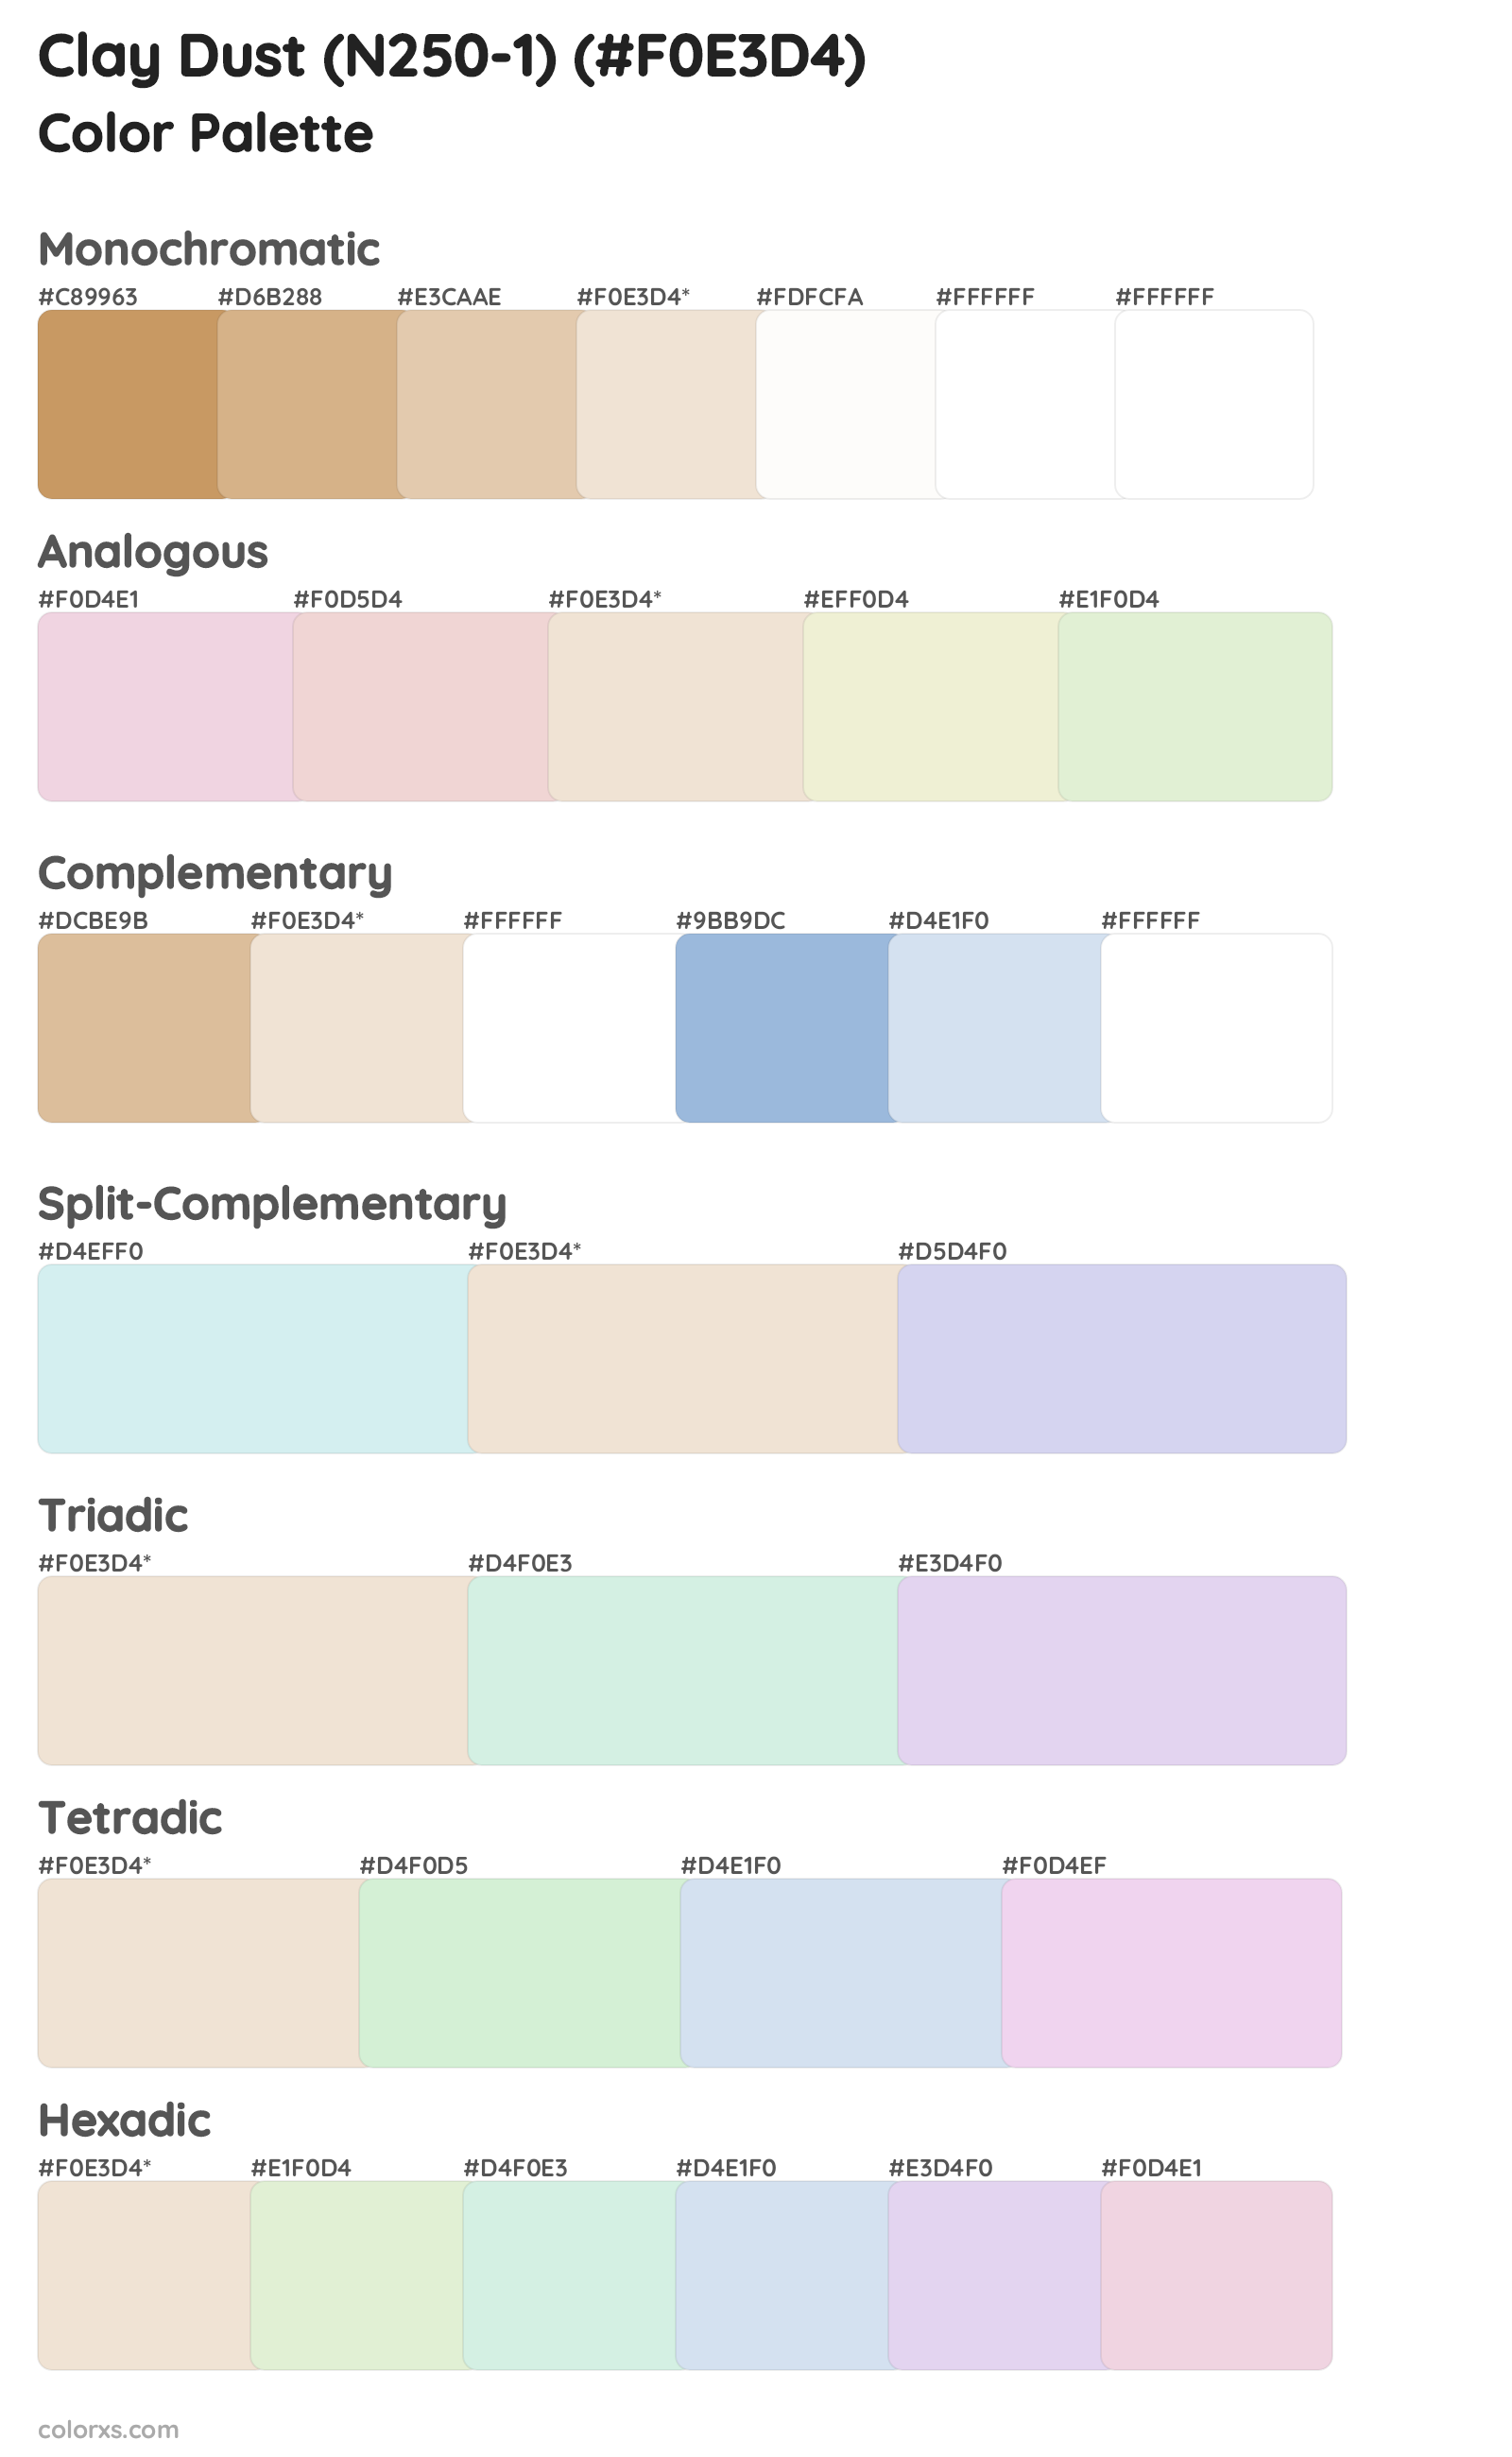 Clay Dust (N250-1) Color Scheme Palettes